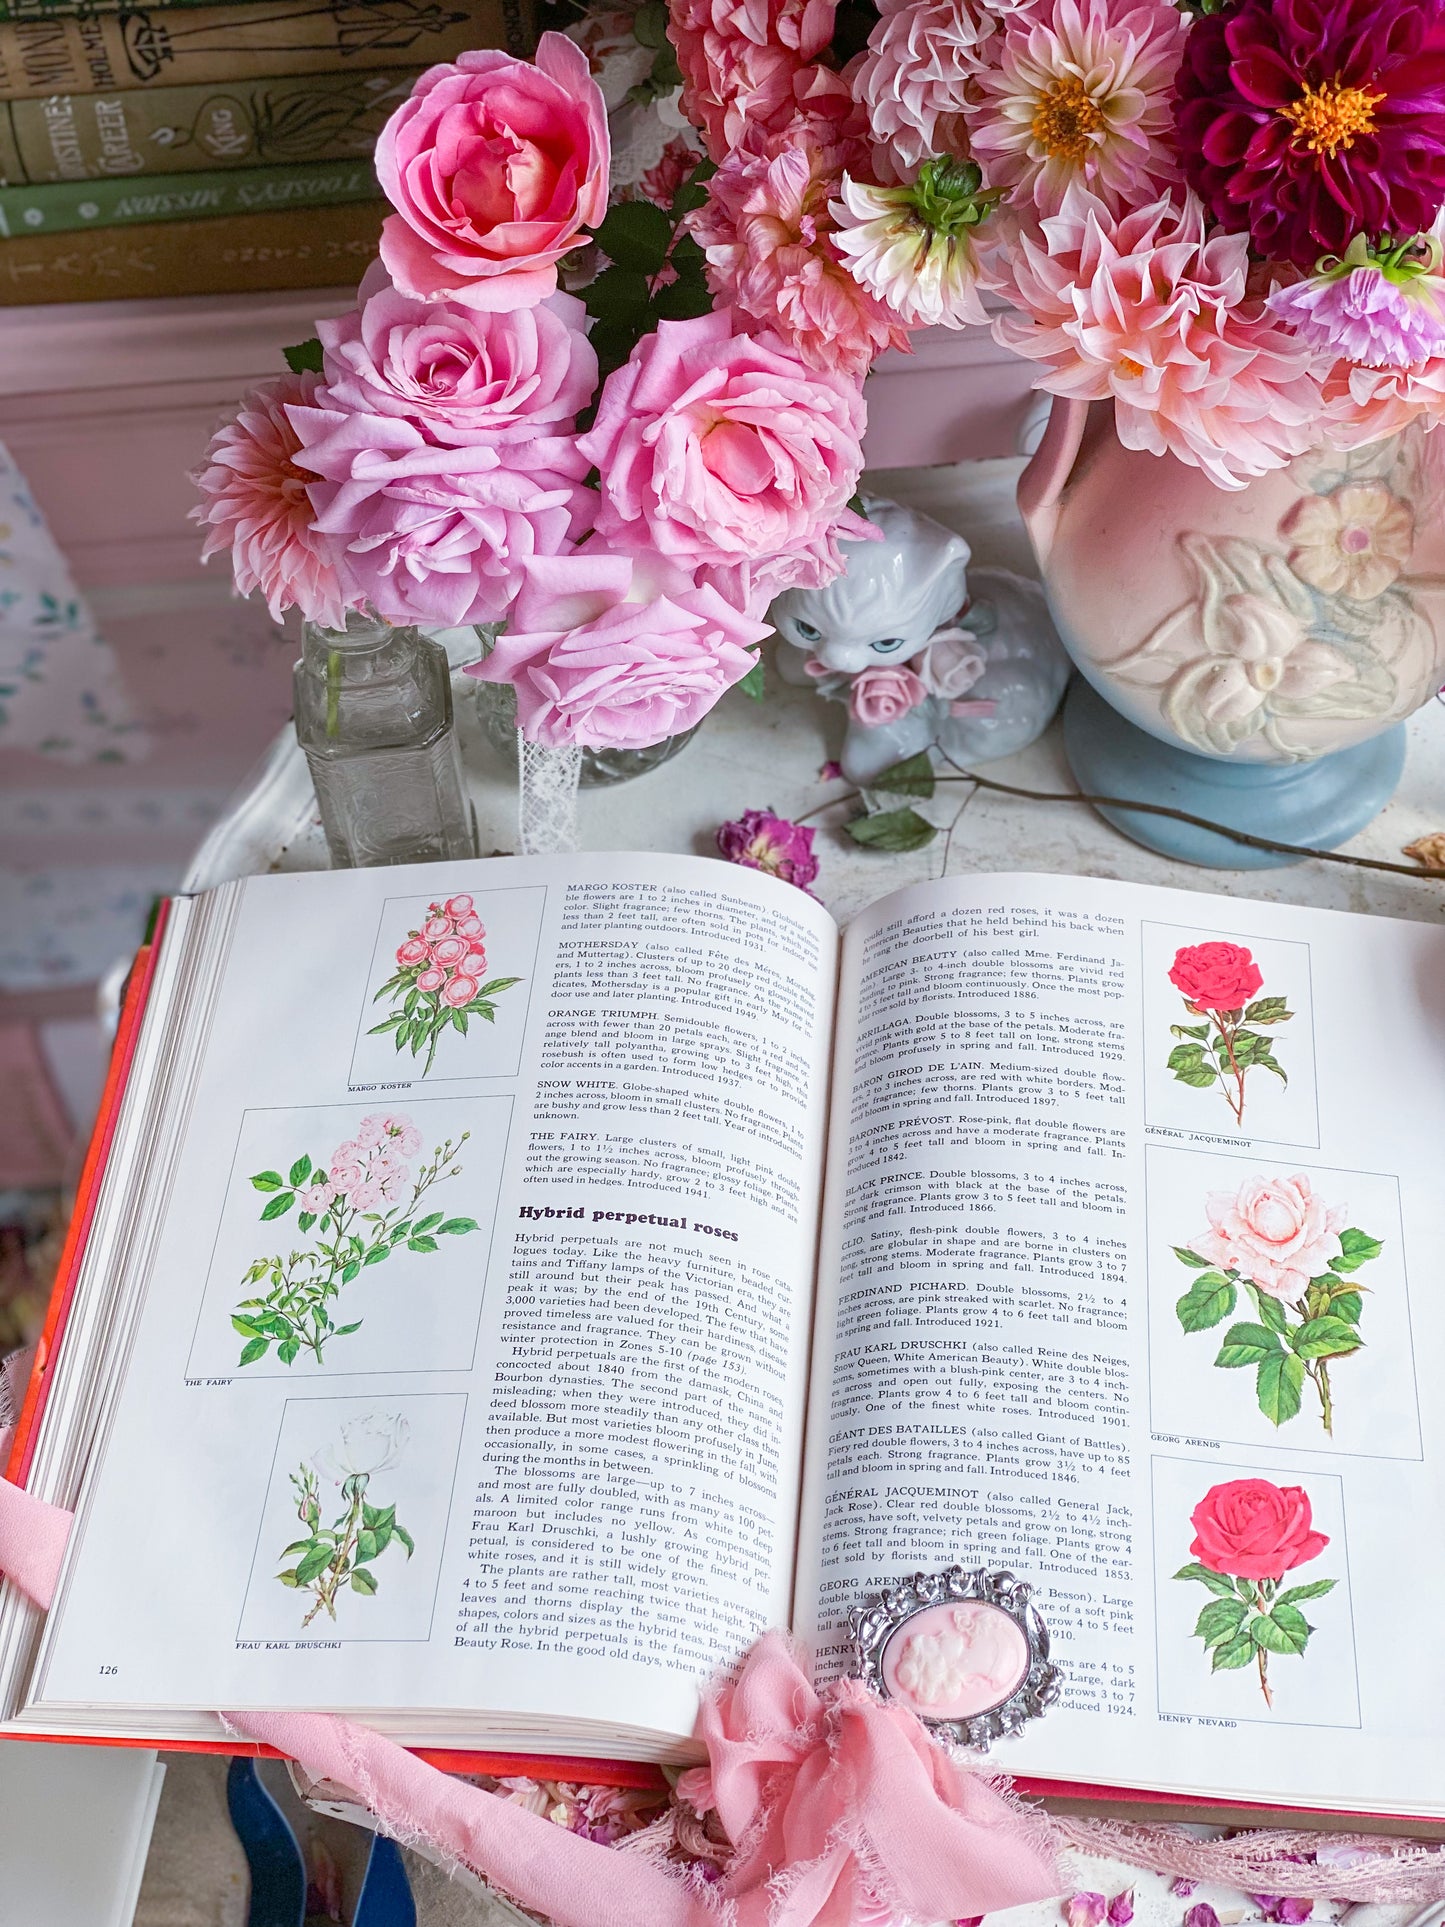 Rosas: una enciclopedia de la vida en el tiempo